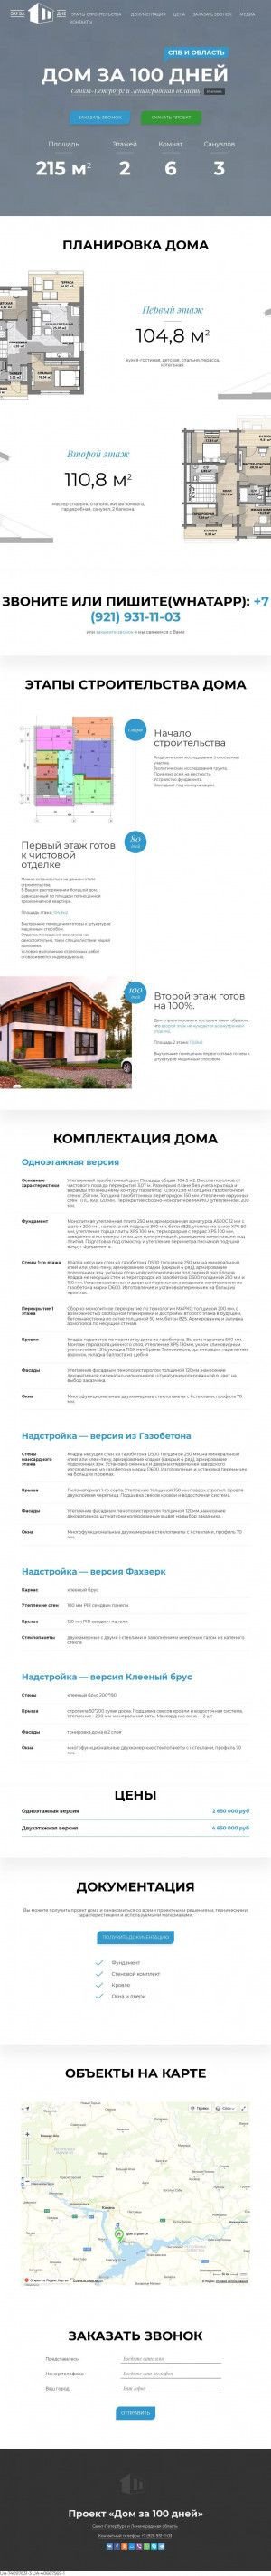 Предпросмотр для 2.atom.spb.ru — Профтехстрой